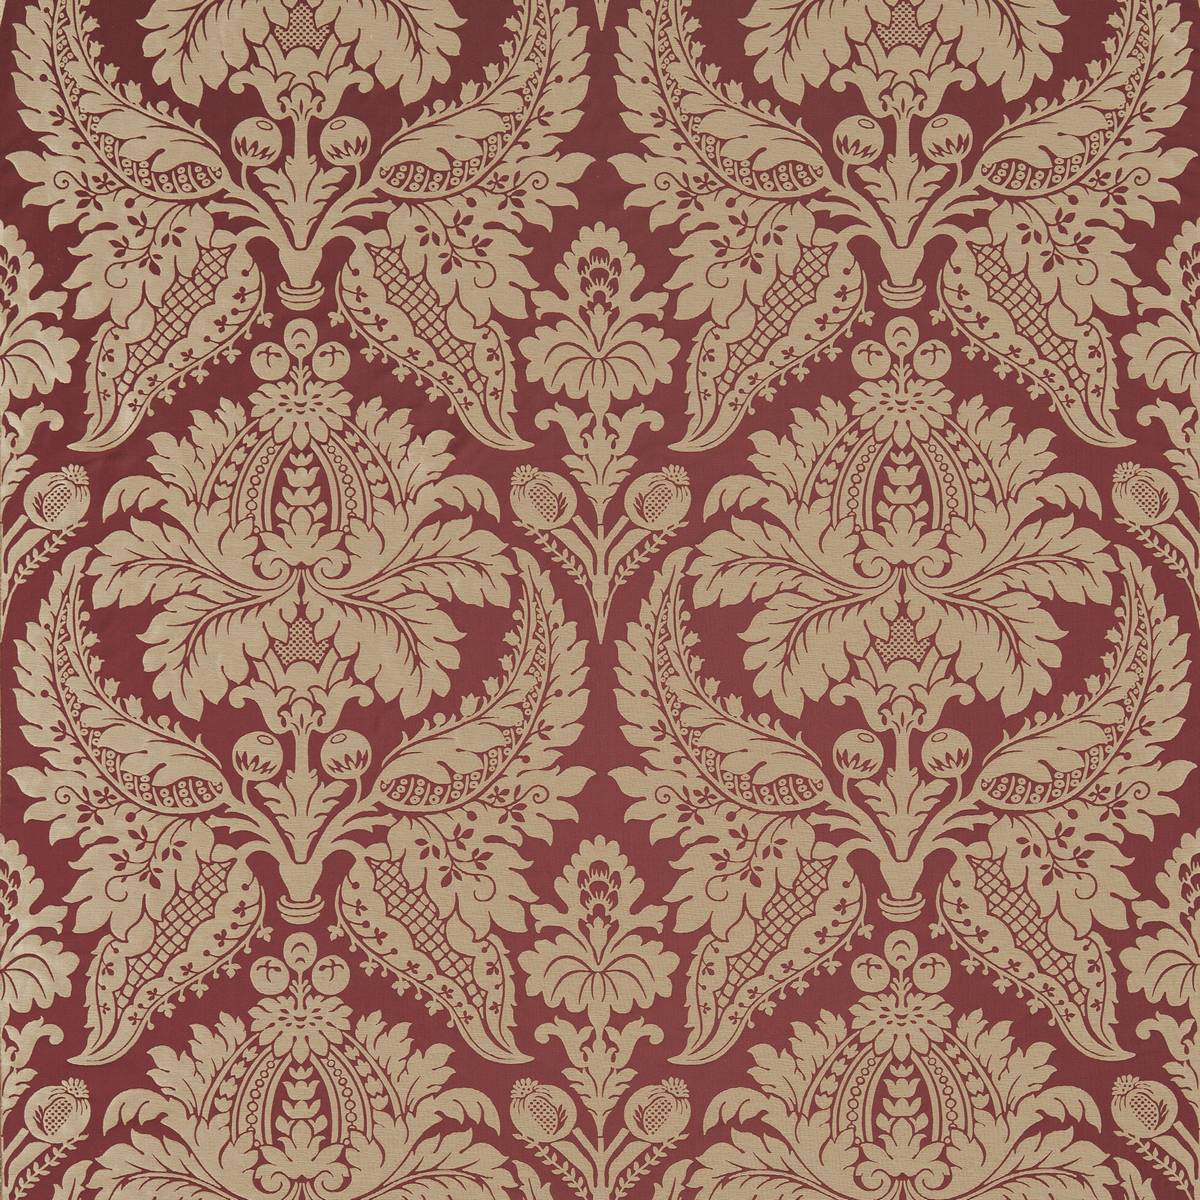 Malmaison Damask Garnet Fabric by Zoffany